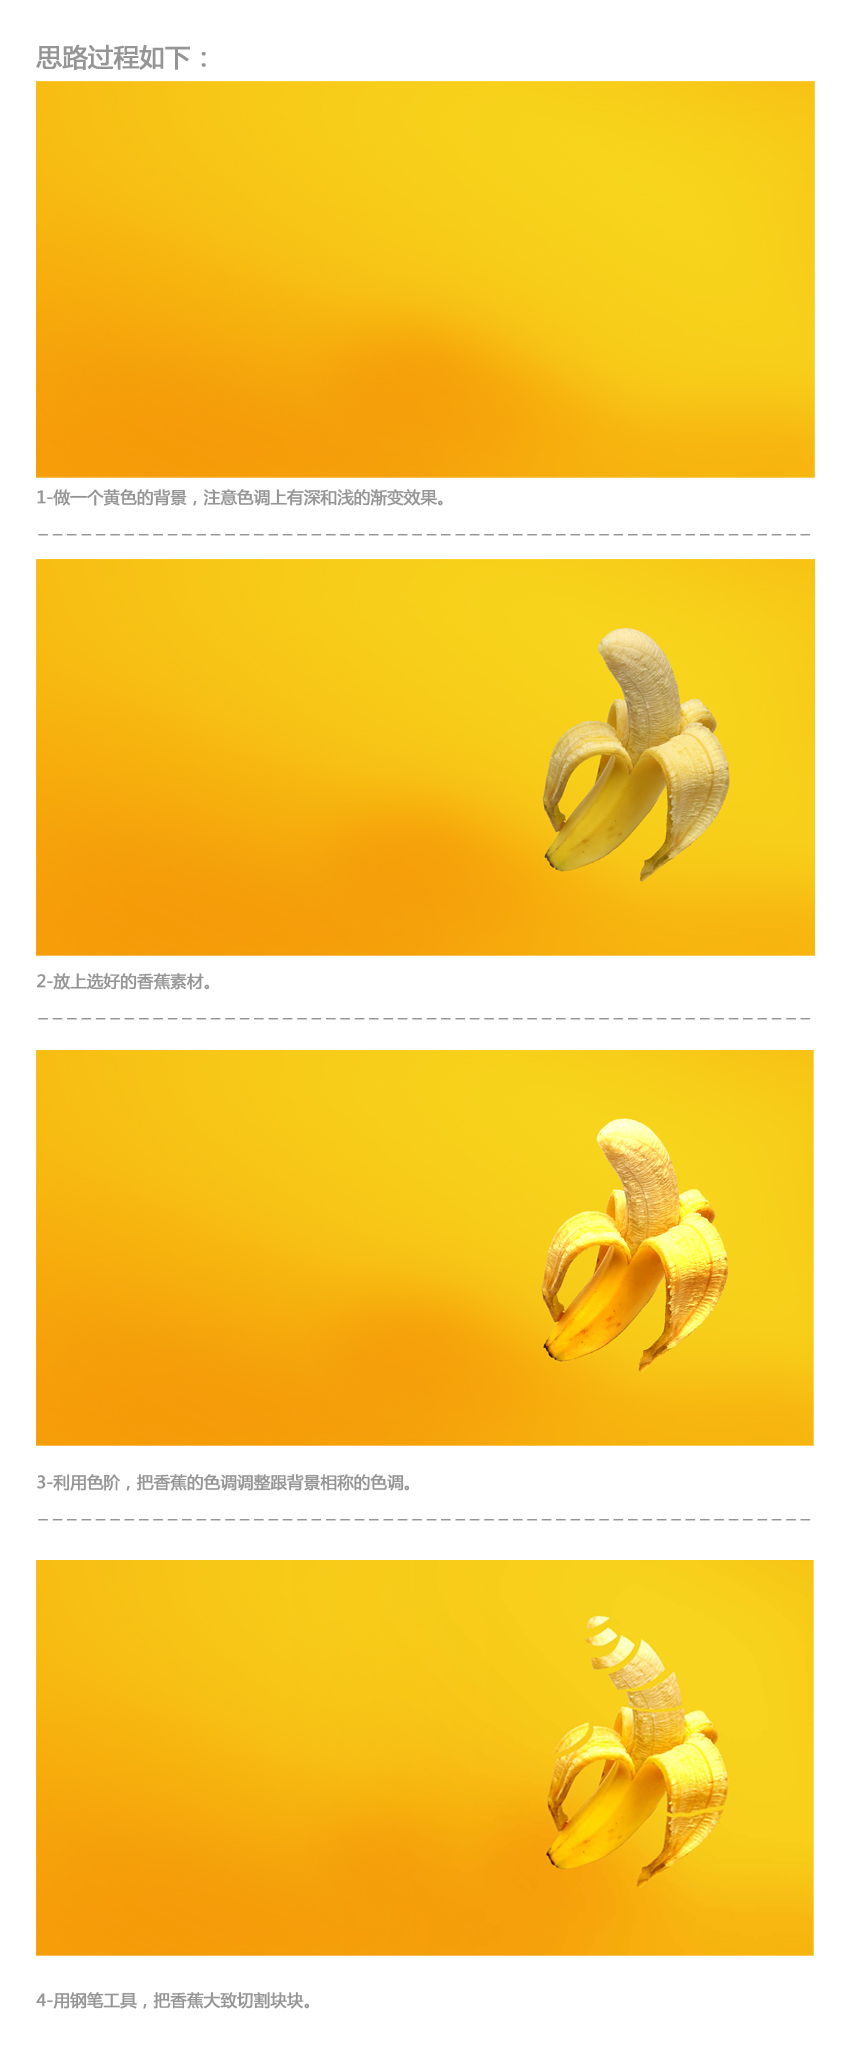 PS打造超炫的香蕉海报教程2